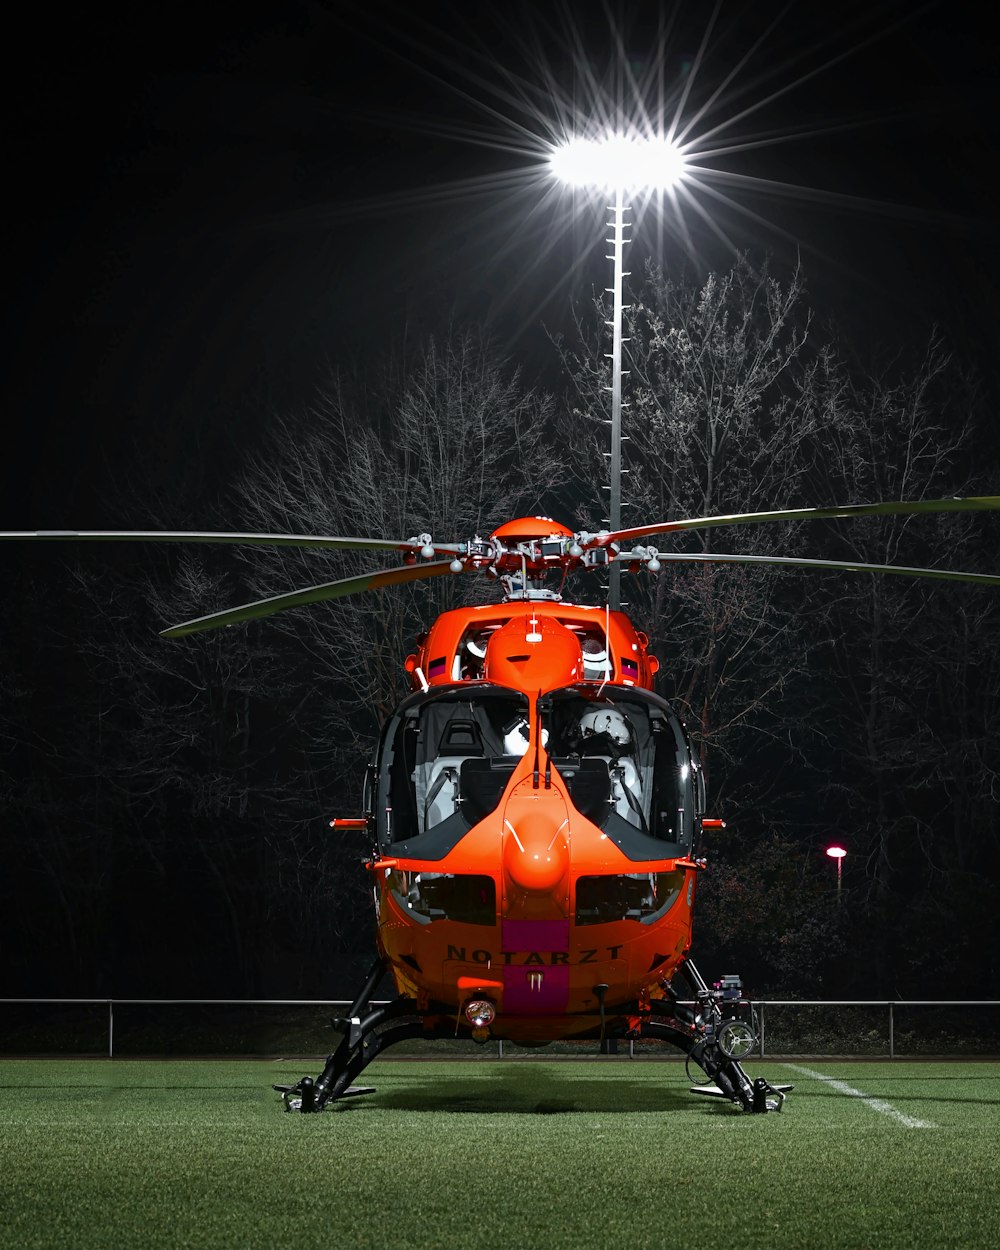 elicottero arancione e nero sul campo di erba verde durante la notte